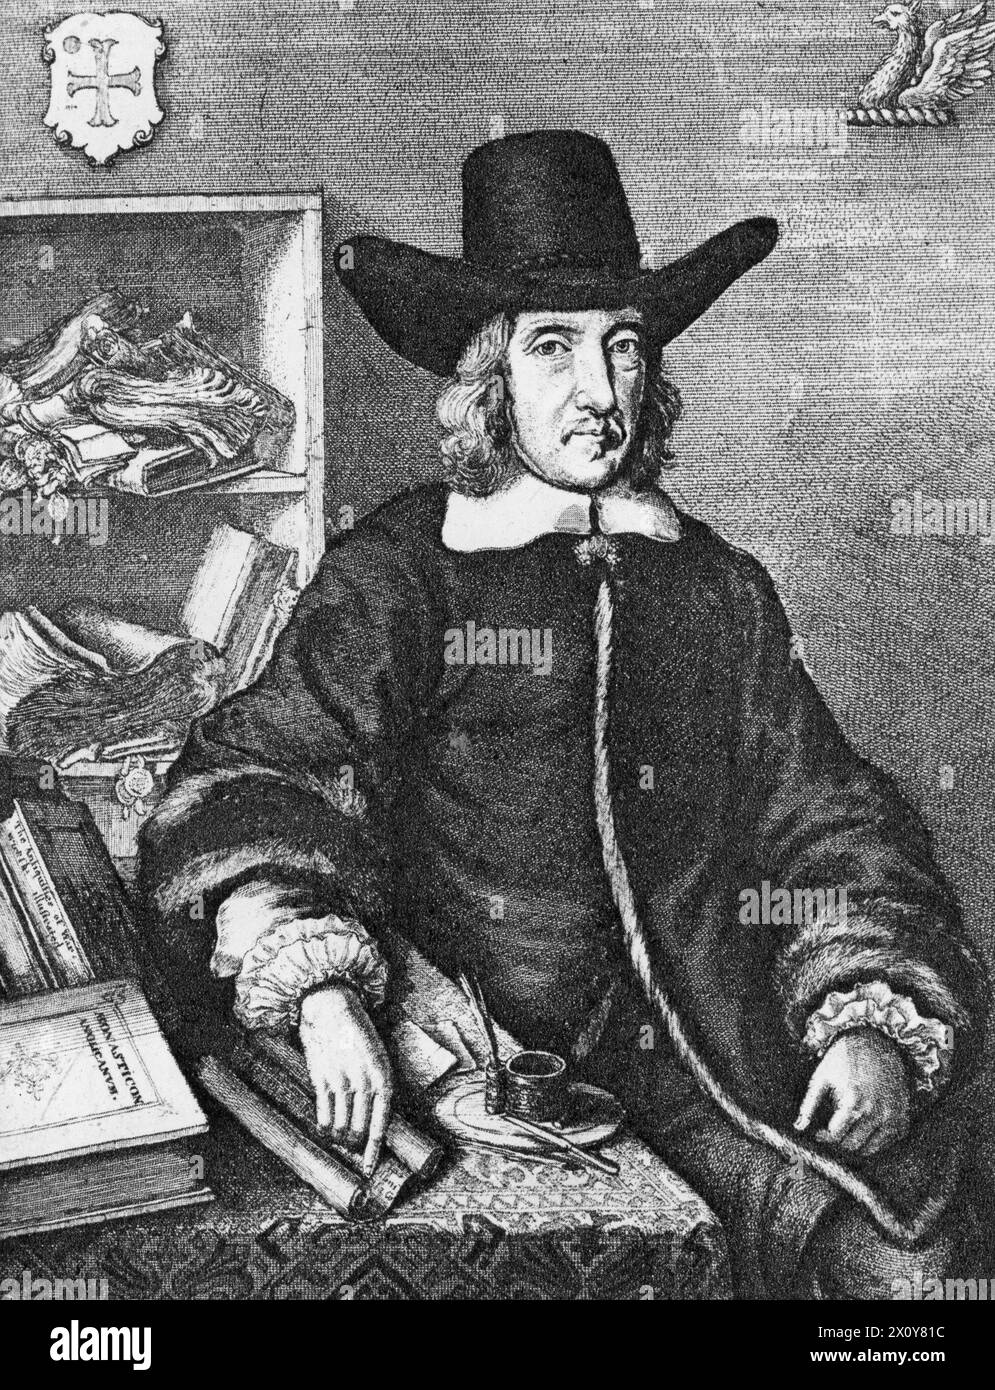 Sir William Dugdale (1605-1686), 1656. Di Wenceslaus Hollar (1607-1677). Dugdale era un antiquario e araldo inglese. Come studioso fu influente nello sviluppo della storia medievale come materia accademica. Dal frontespizio di "The Antiquities of Warwickshire Illustrated", 1656. Foto Stock